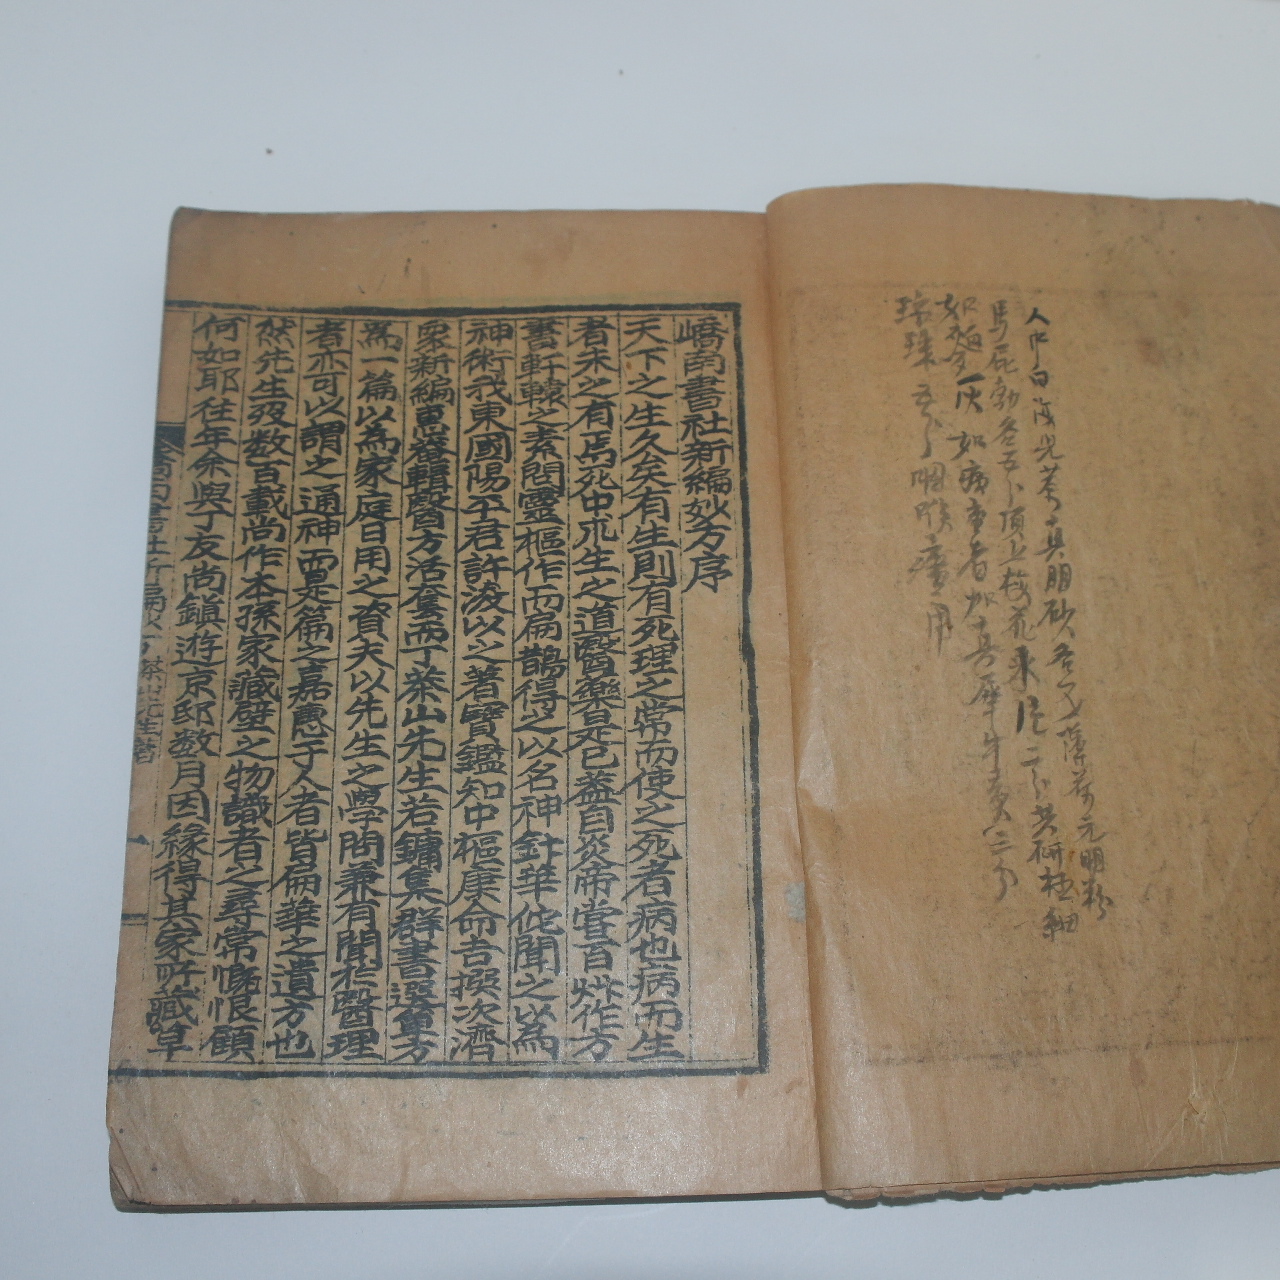 1938년 정약용(丁若鏞) 의서 교남서사신편묘방(嶠南書社新編妙方) 1책완질